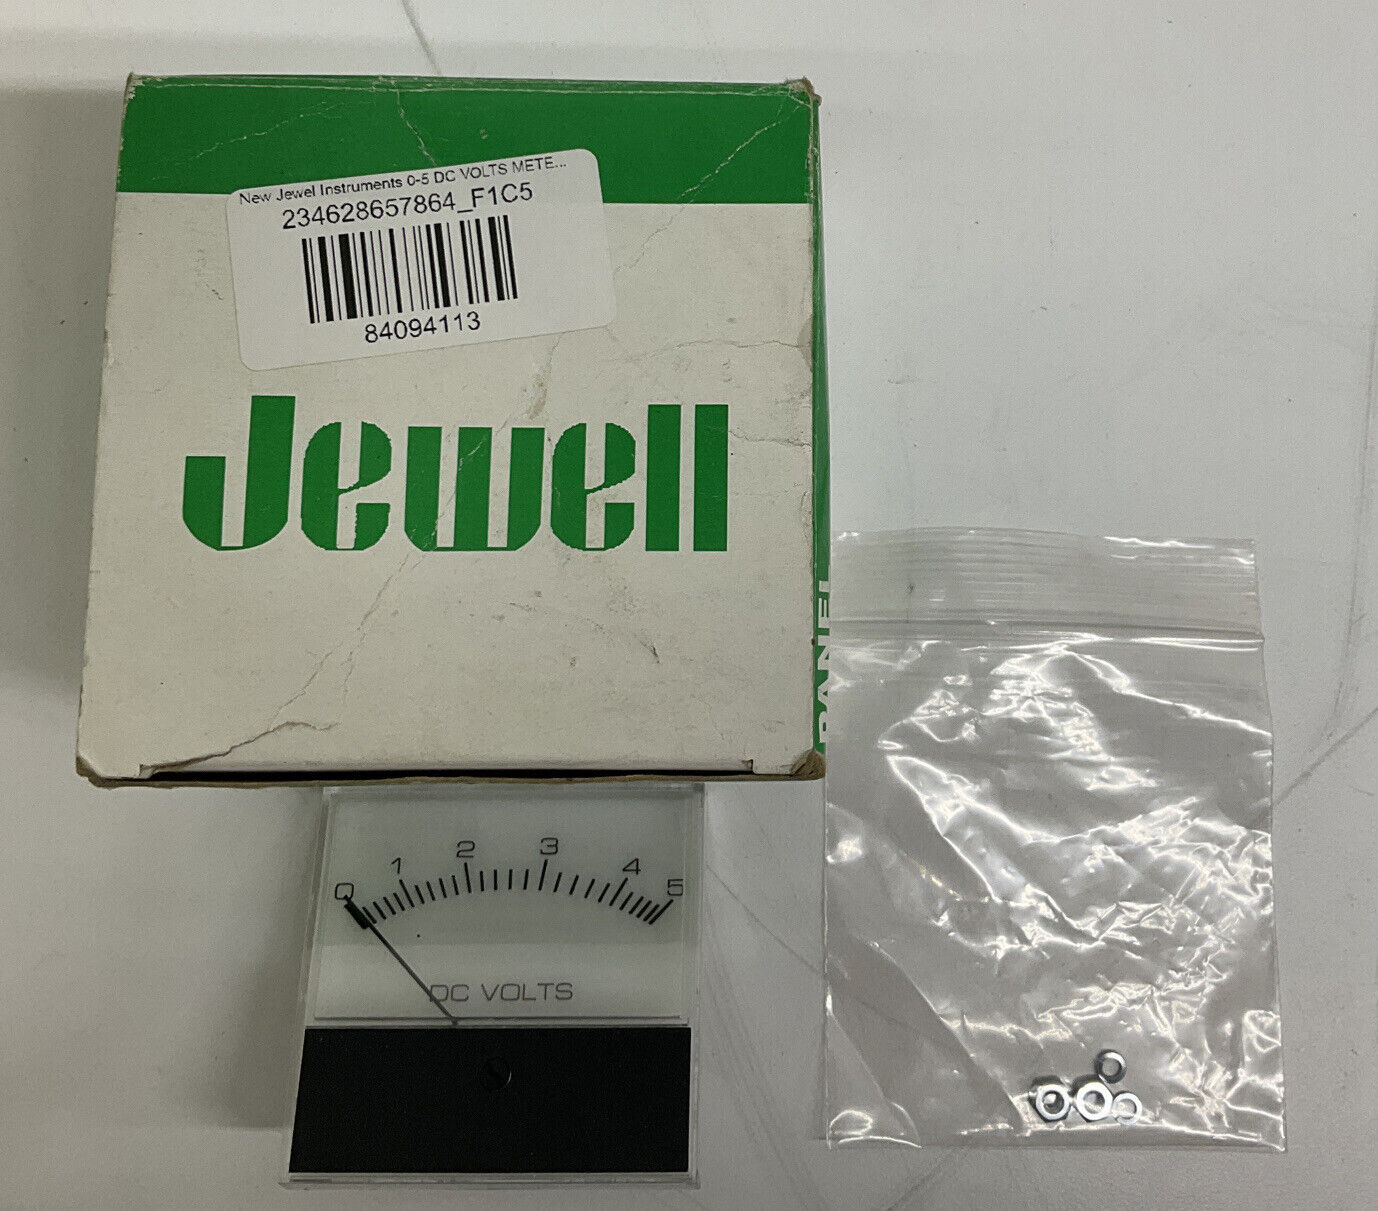 Jewel Instruments 0520-28AJ DC Volts Meter (BL159) - 0